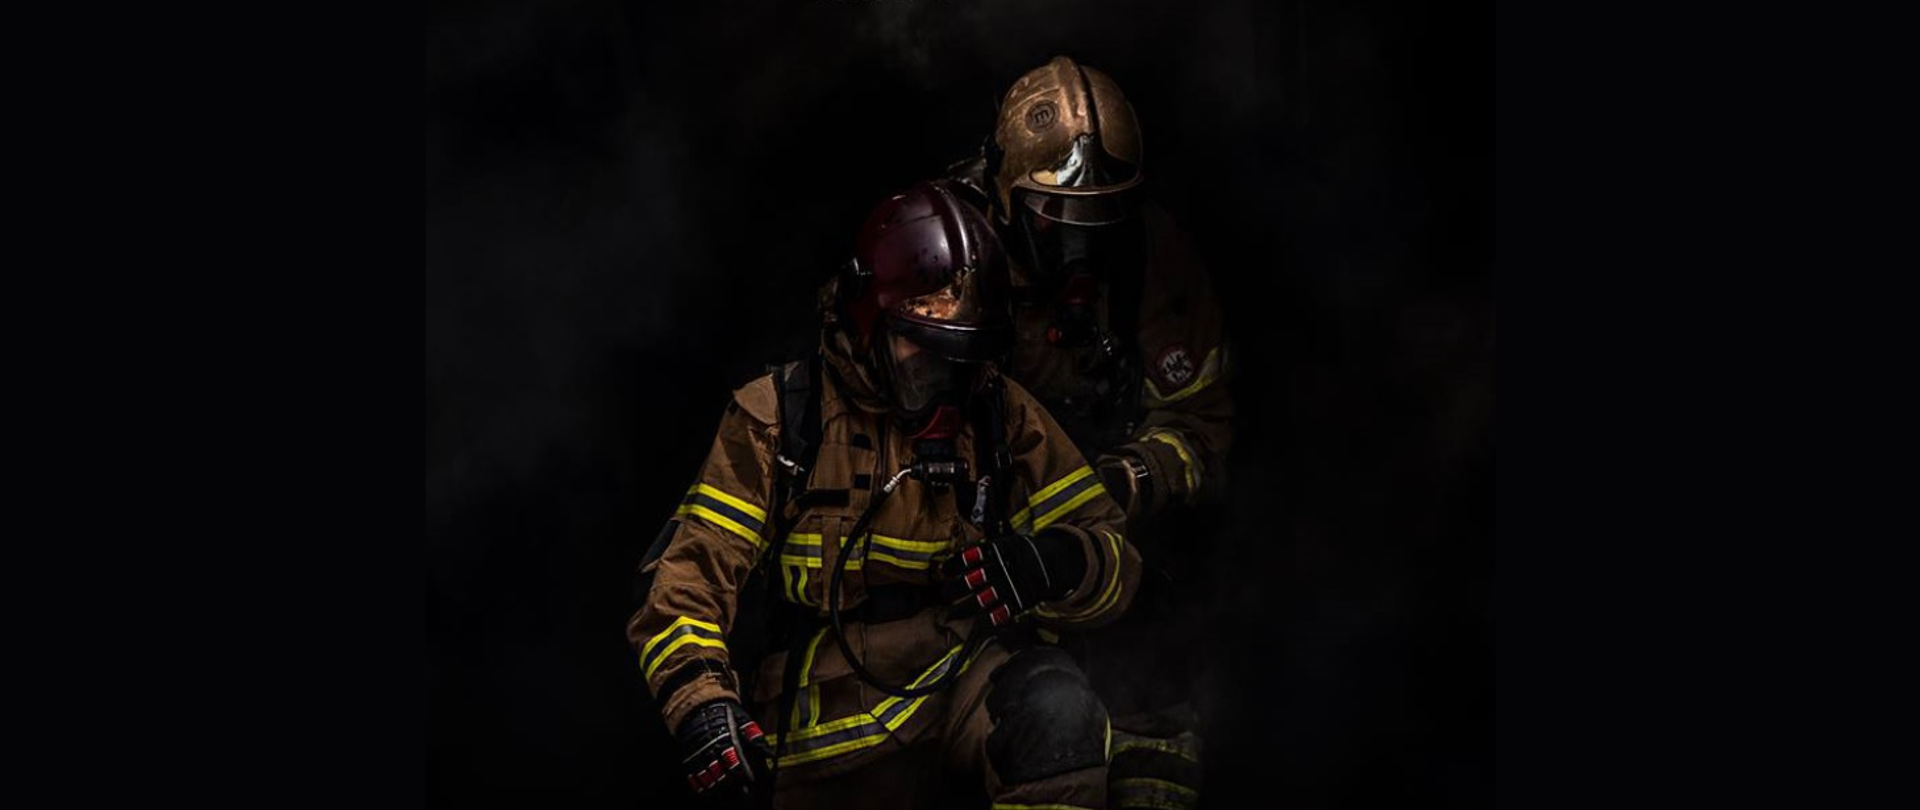 Artystyczne zdjęcie dwóch strażaków na czarnym tle wspierających się i ukazujące ich poświecenie. Są ubraniu w umundurowanie specjalne wraz z aparatami oddechowymi oraz okopceni dymem.